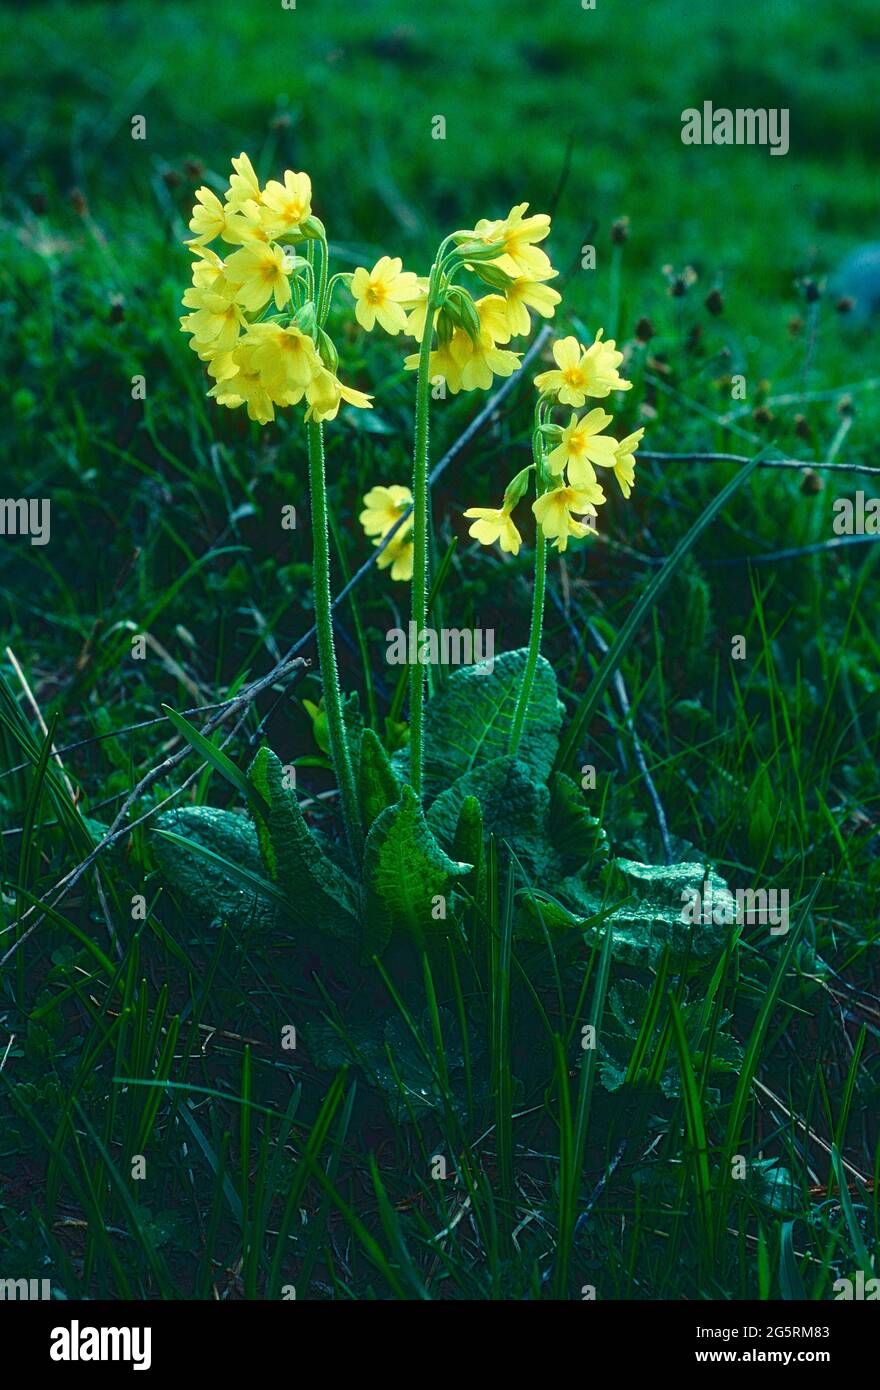 Bälli, Primula elatior, Primulaceae, Blühend, Blume, Pflanze, Weisstannental, Kanton St. Gallen, Suisse Banque D'Images